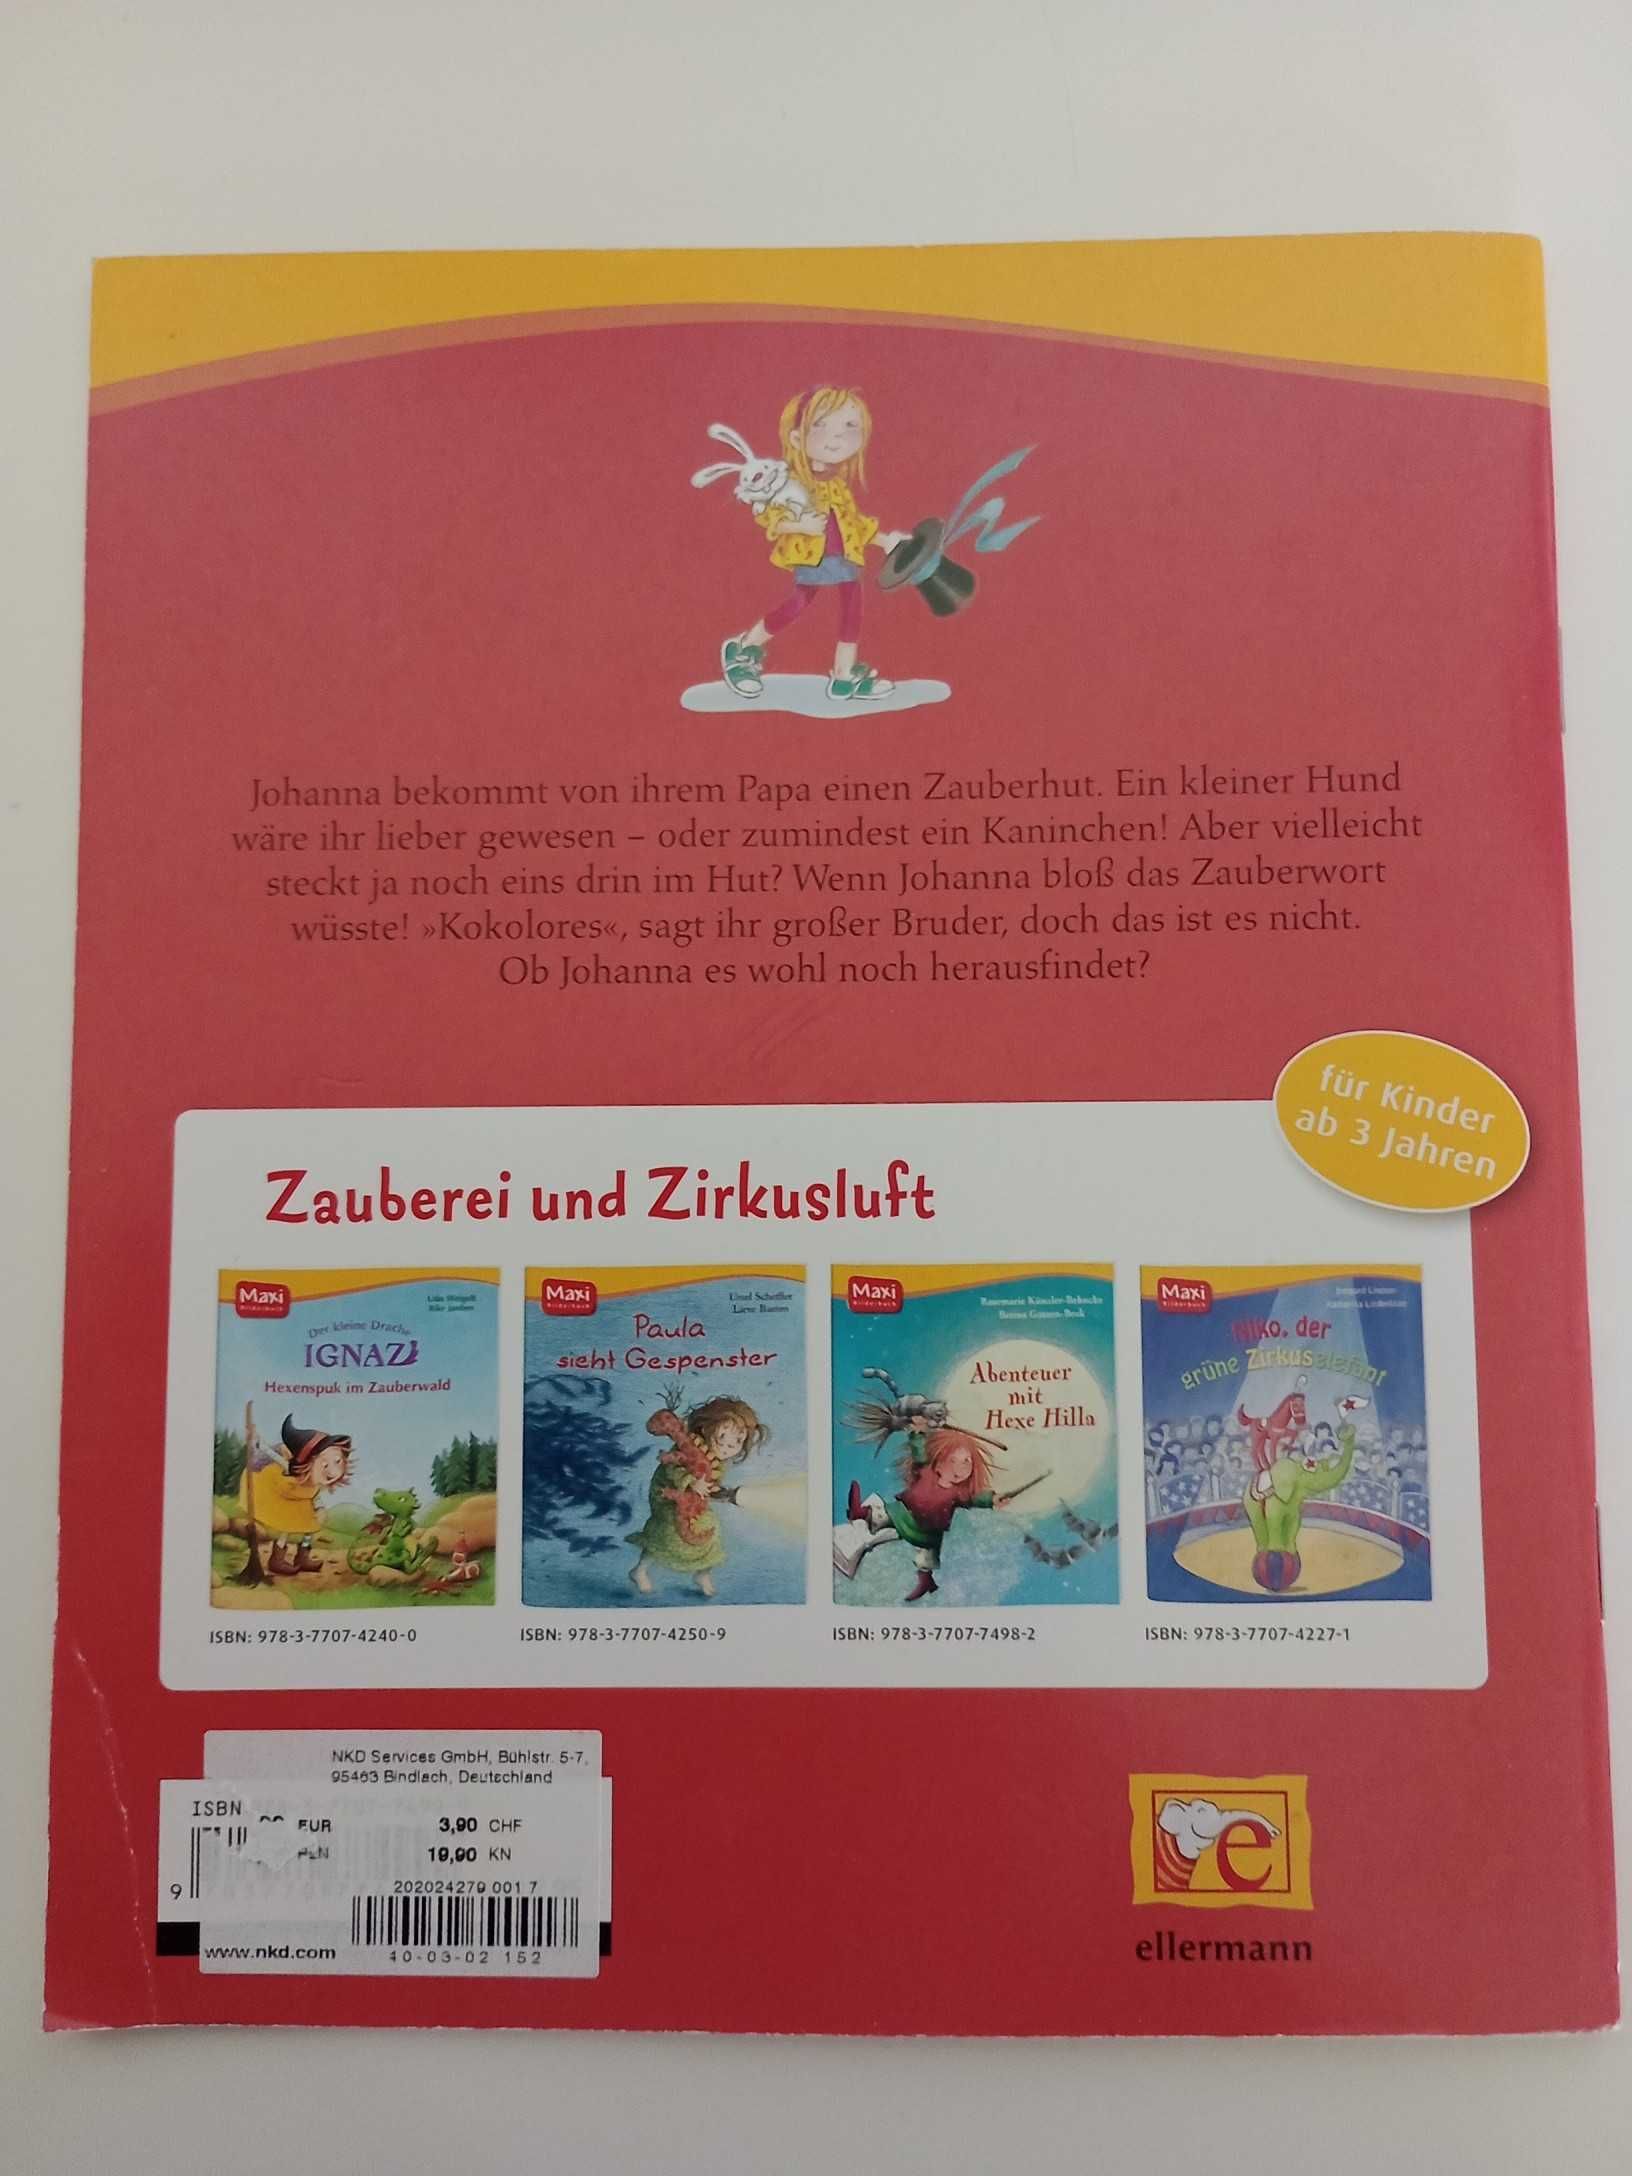 Johannas Zauberhut Książeczka dla dzieci po niemiecku